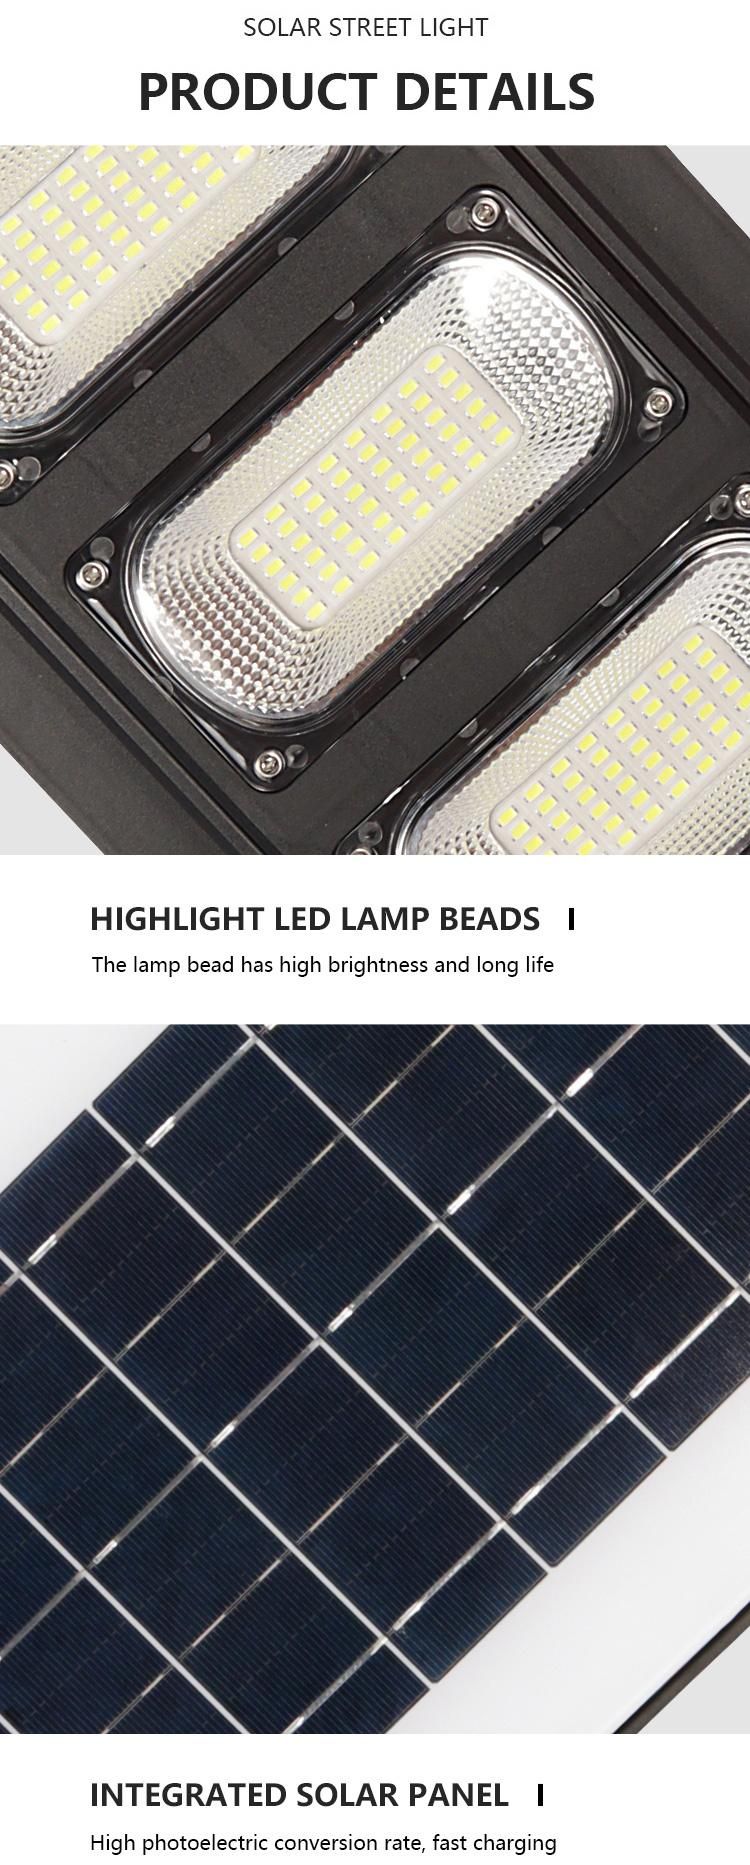 150W Solar-Powered Panel Street Lighting Integrated Solar LED Street Light